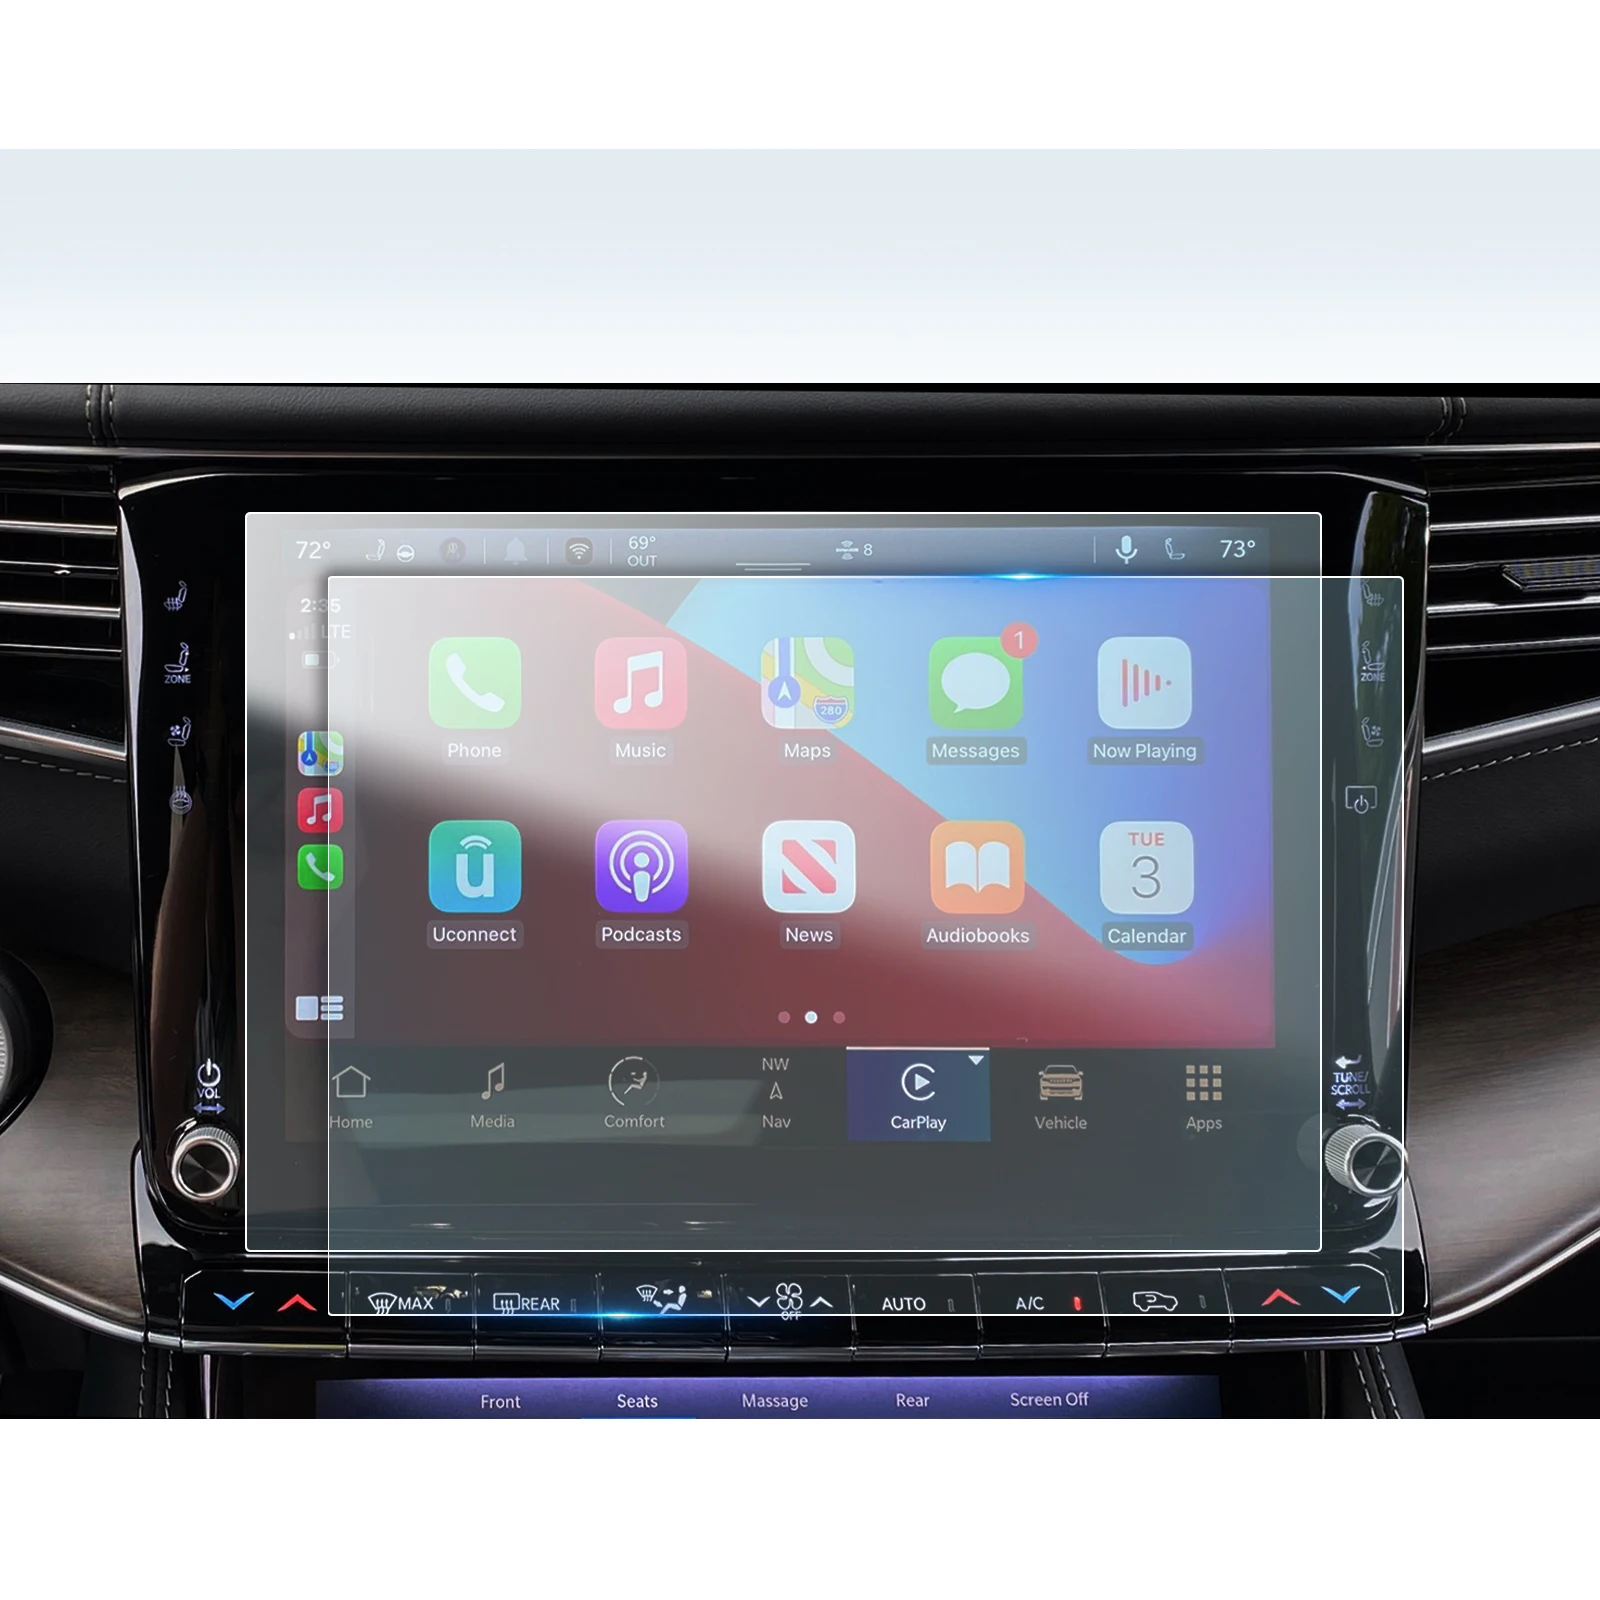 

LFOTPP PET Защита экрана для Bronco 12 дюймов 2021 Автомобильный мультимедийный радиодисплей авто аксессуары для интерьера 261*163 мм 2 шт